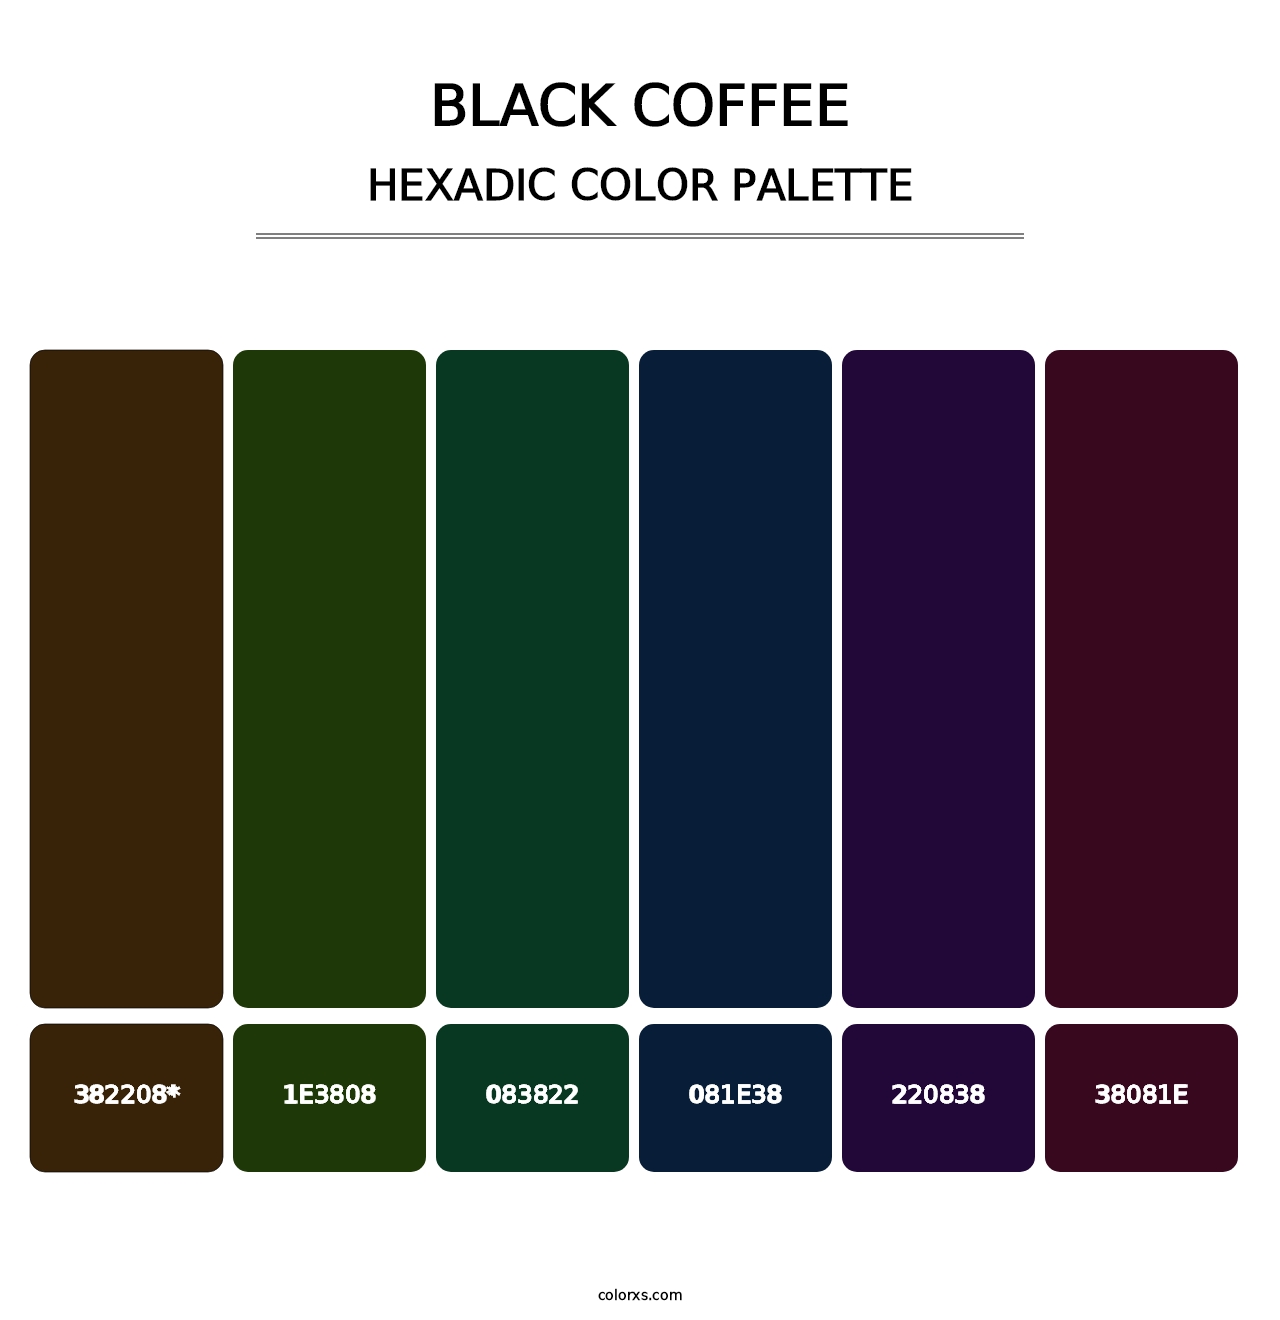 Black Coffee - Hexadic Color Palette